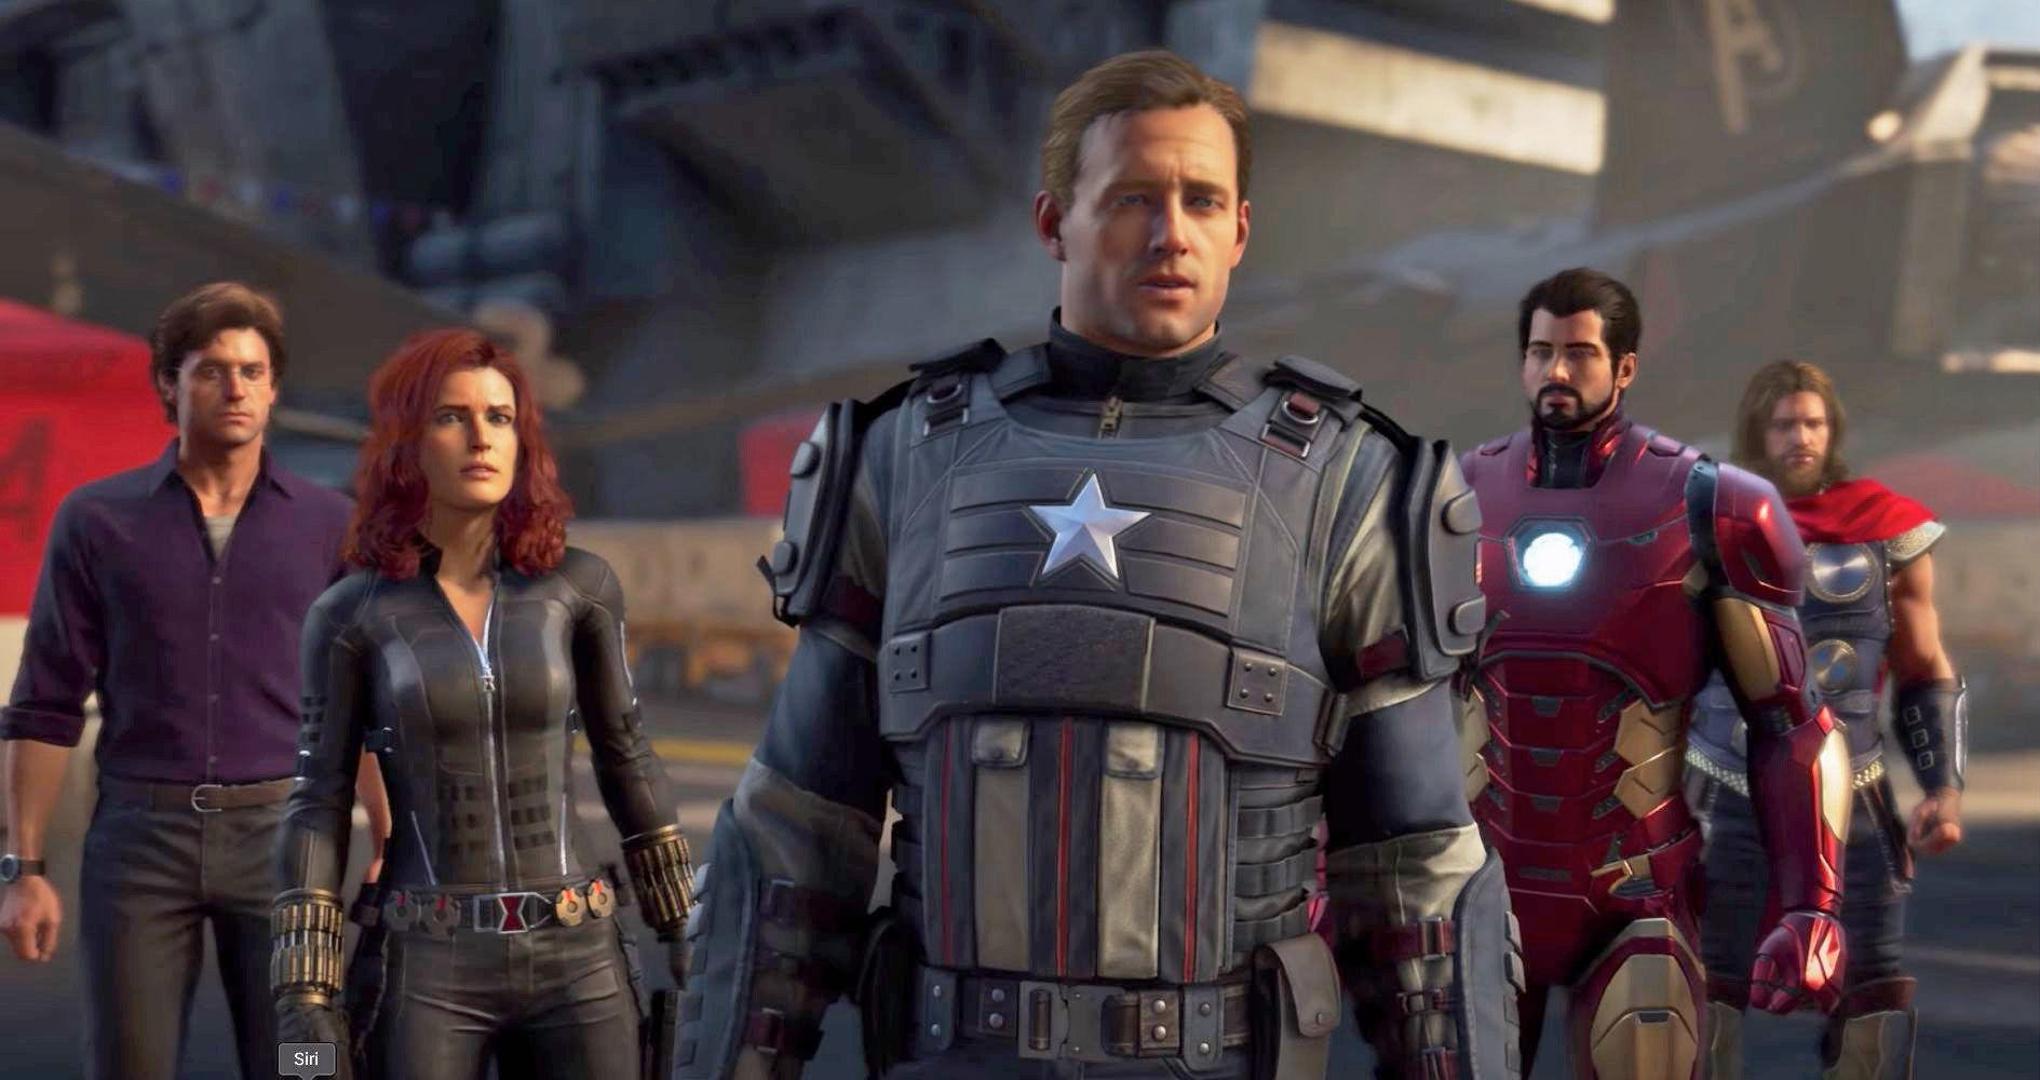 Avengersi nakon kina osvajaju i konzole za igru

